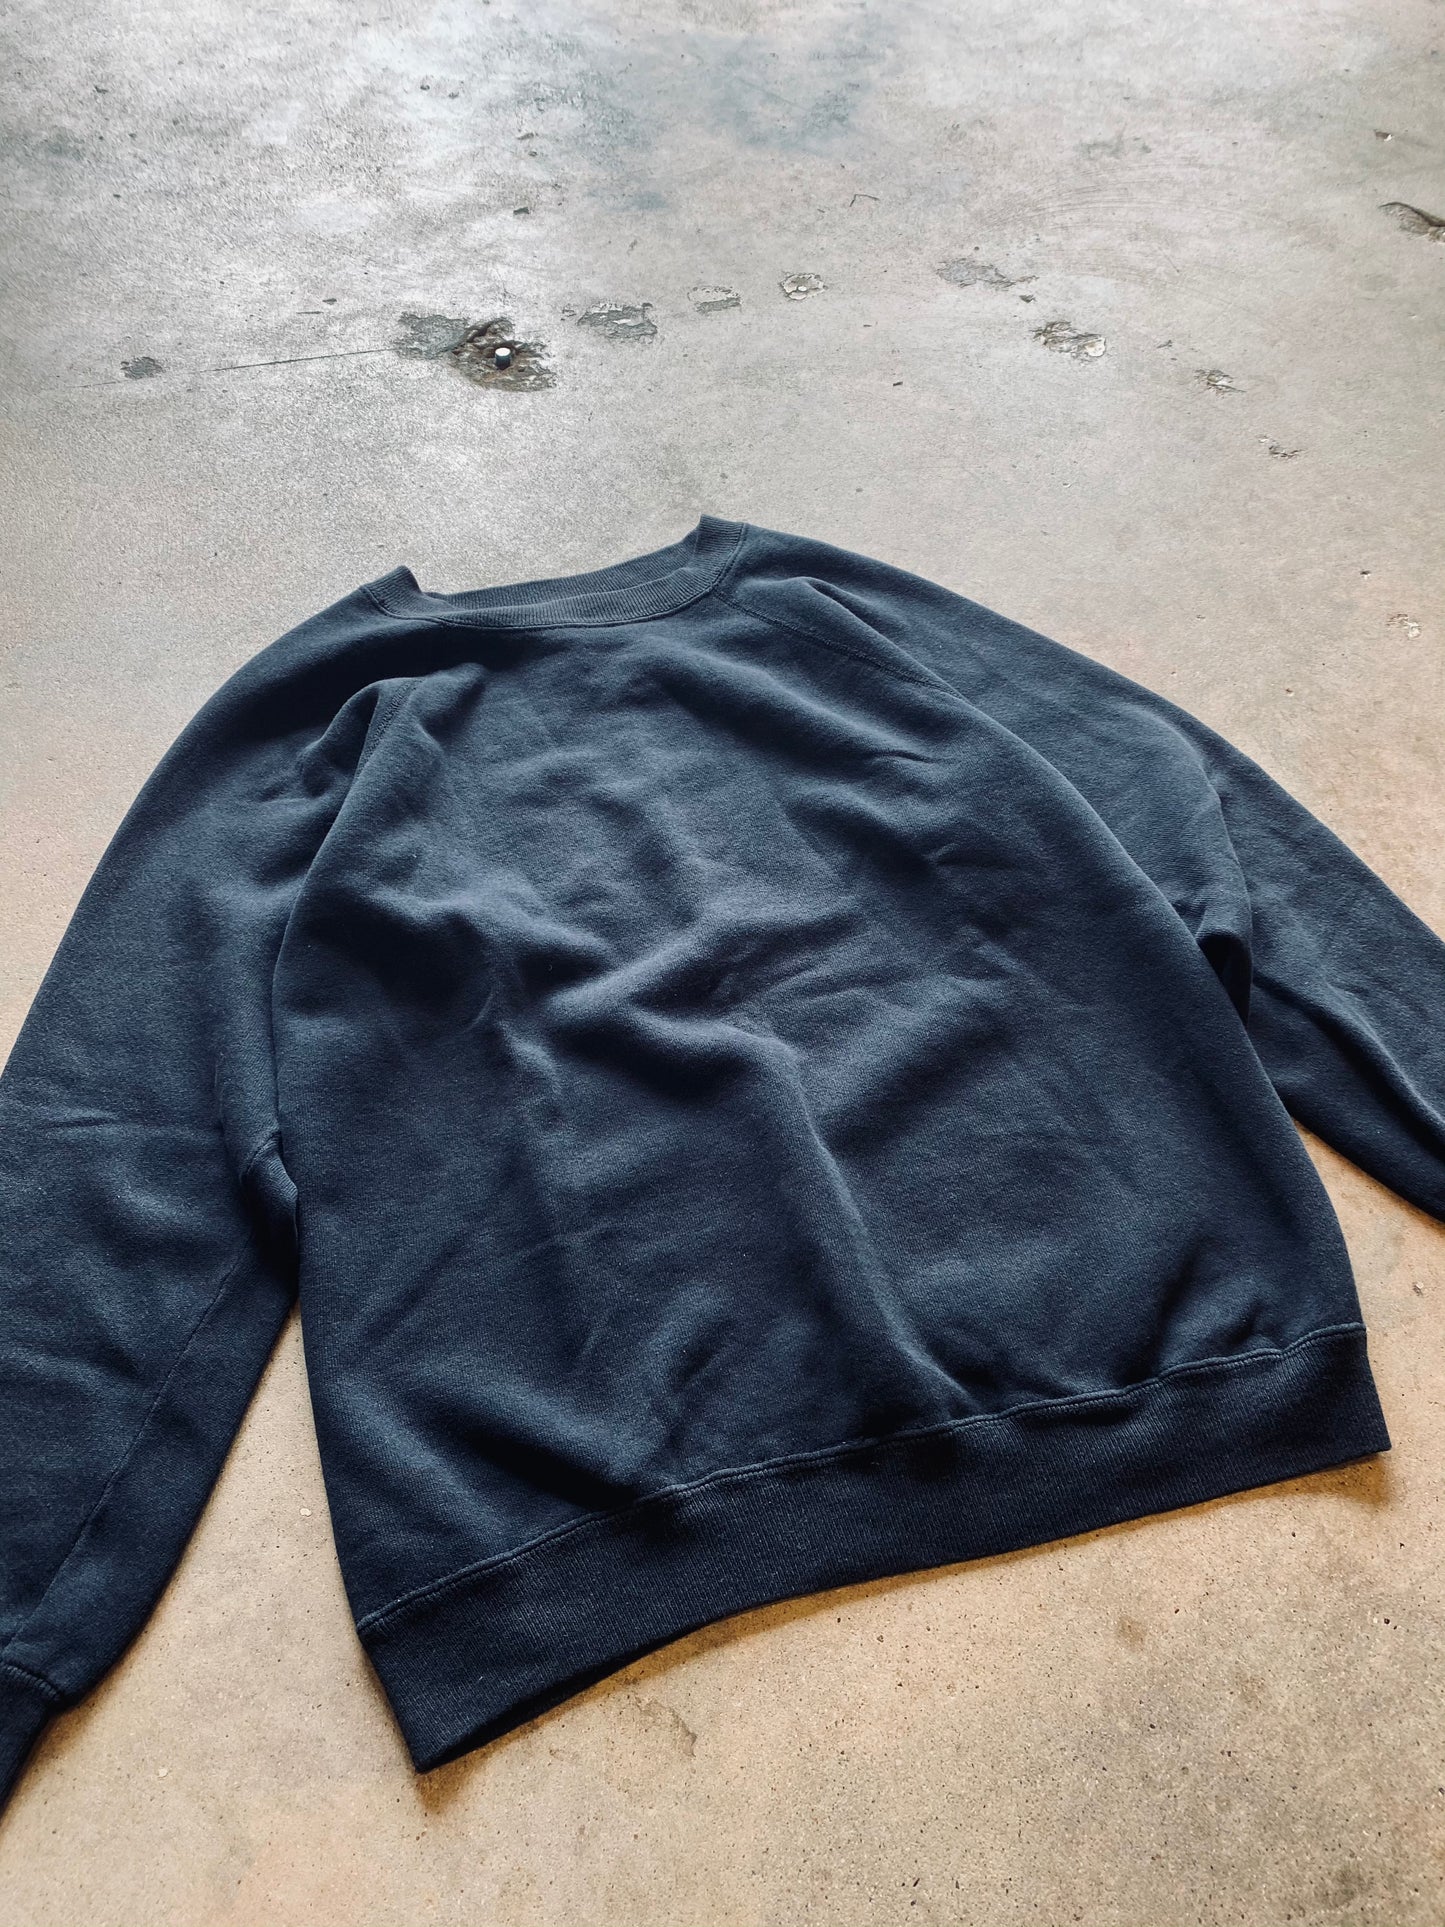 1980s Hanes Raglan Sleeve Sweatshirt